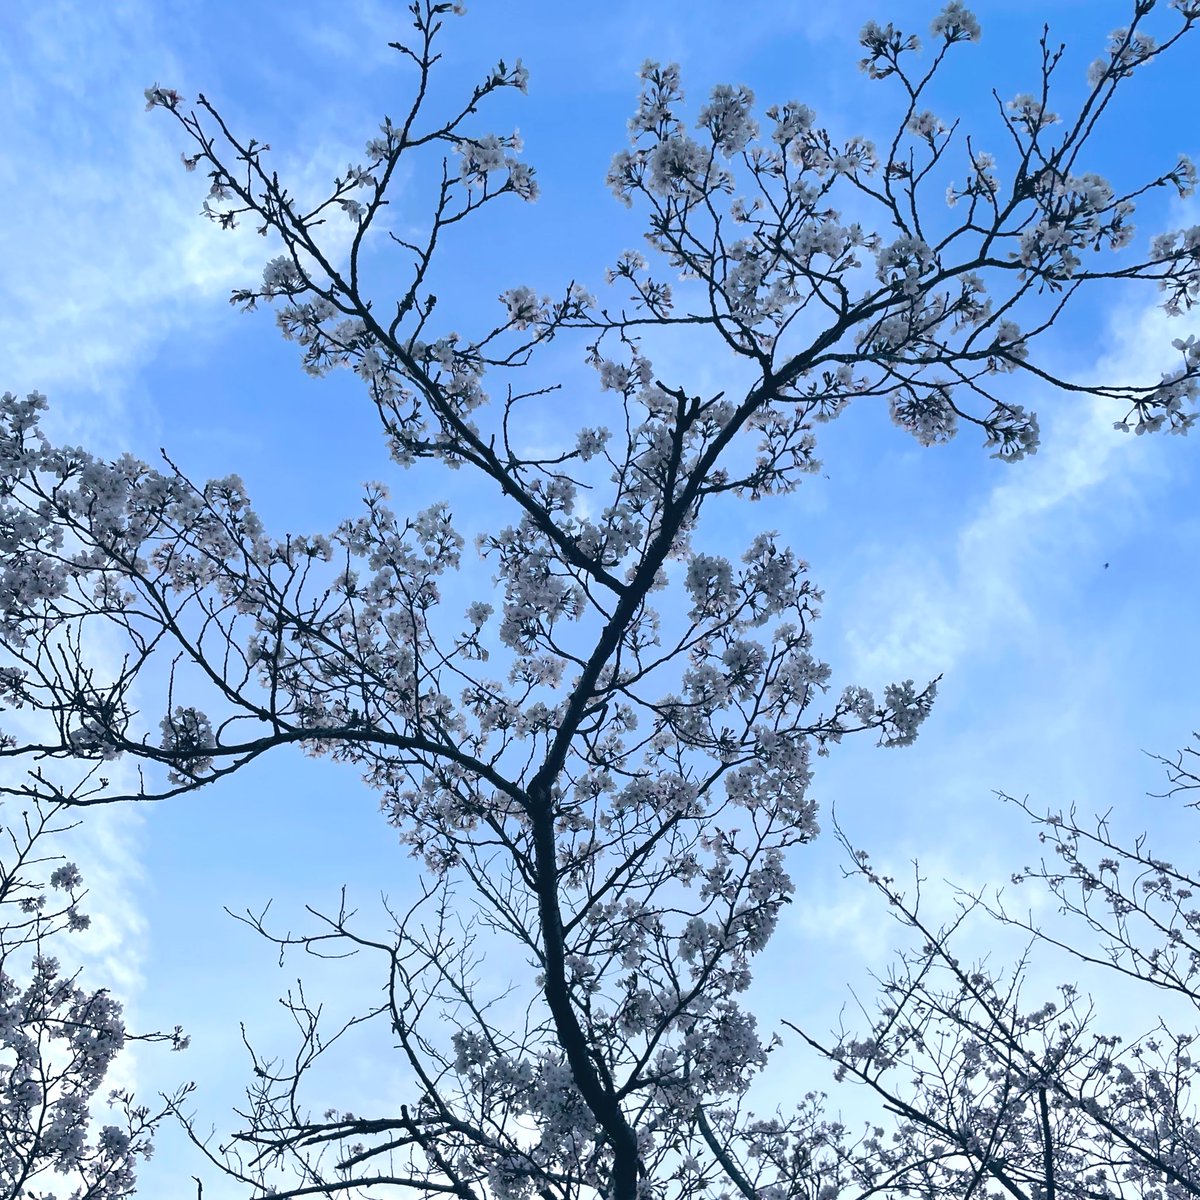 「夕方にいいかんじの桜の花びらを集めました 」|まるかわ💅爪塗り連載中🖌のイラスト